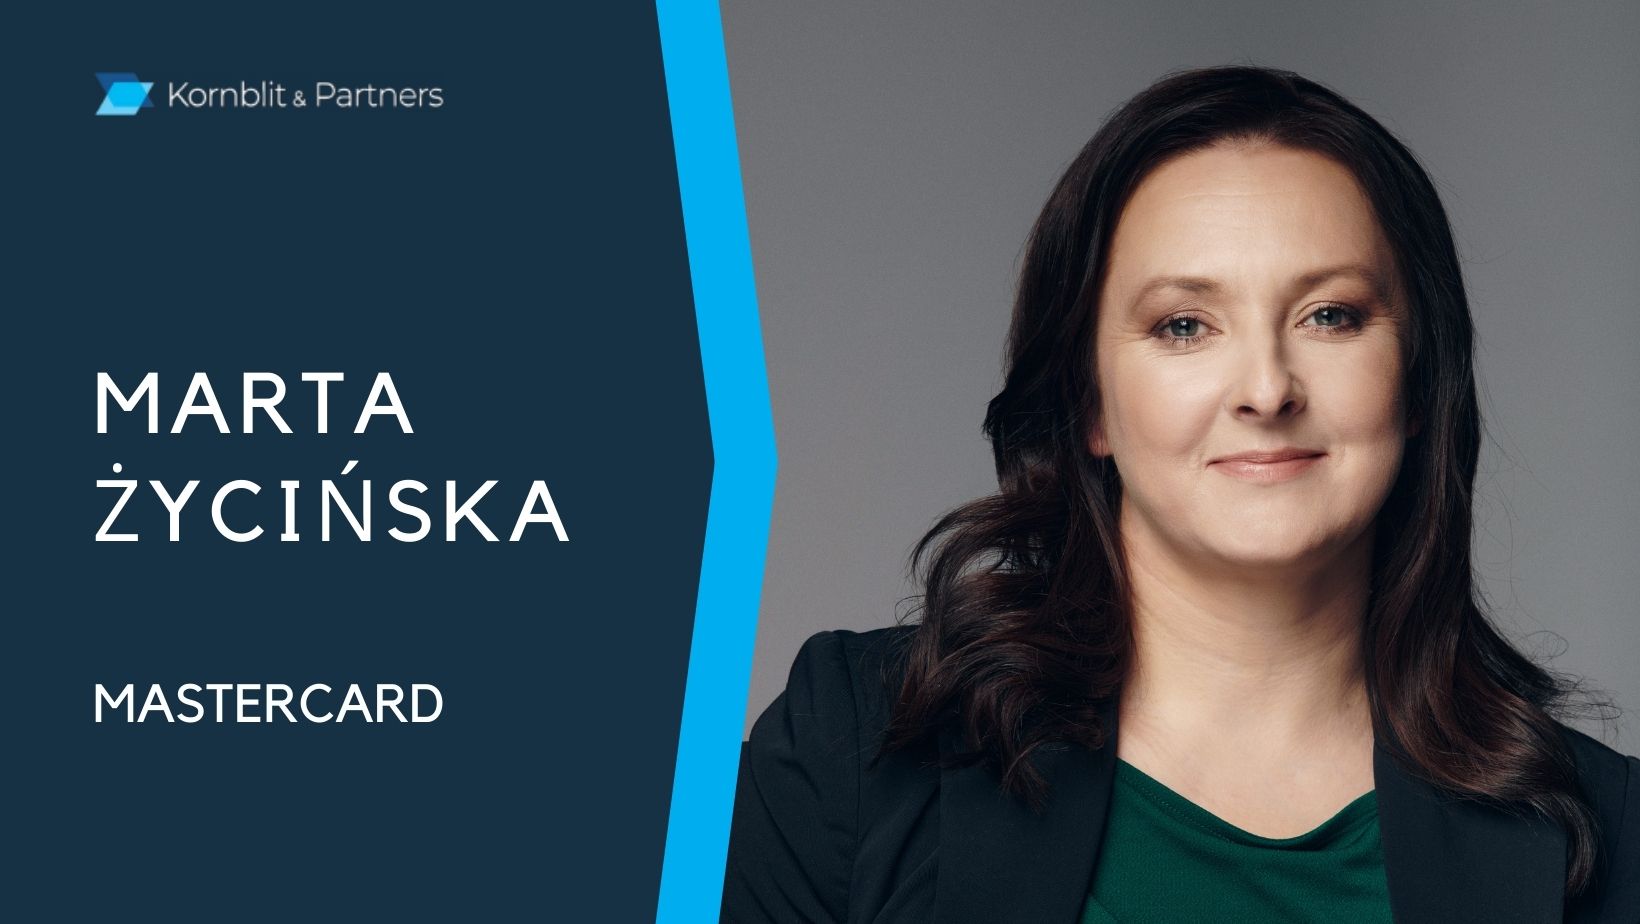 Marta Życińska, Dyrektorka Generalna Mastercard Polska w wywiadzie dla Kornblit & Partners